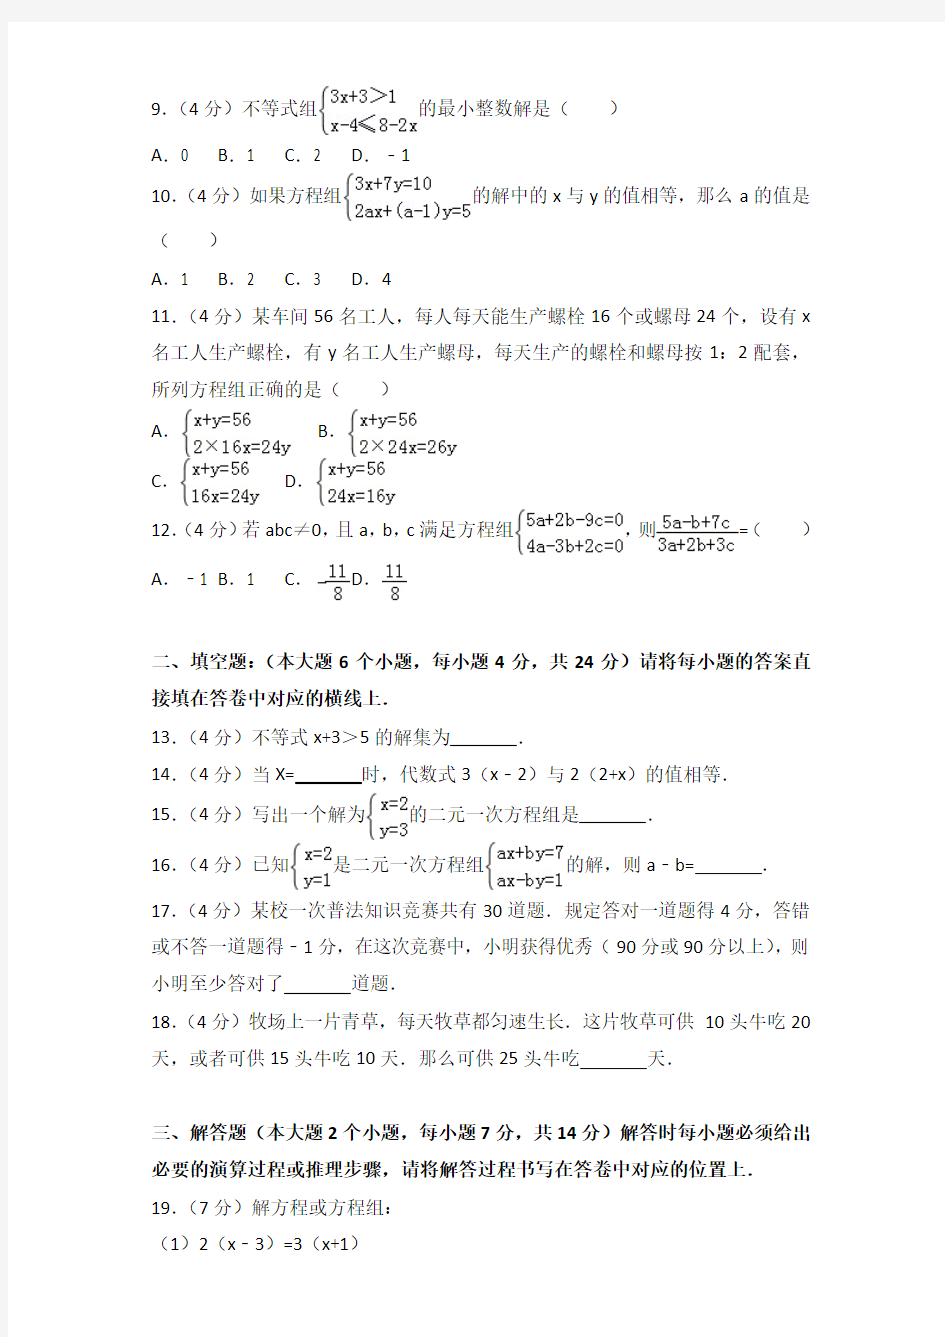 【数学】2015-2016年重庆七十一中七年级下学期期中数学试卷和答案解析PDF